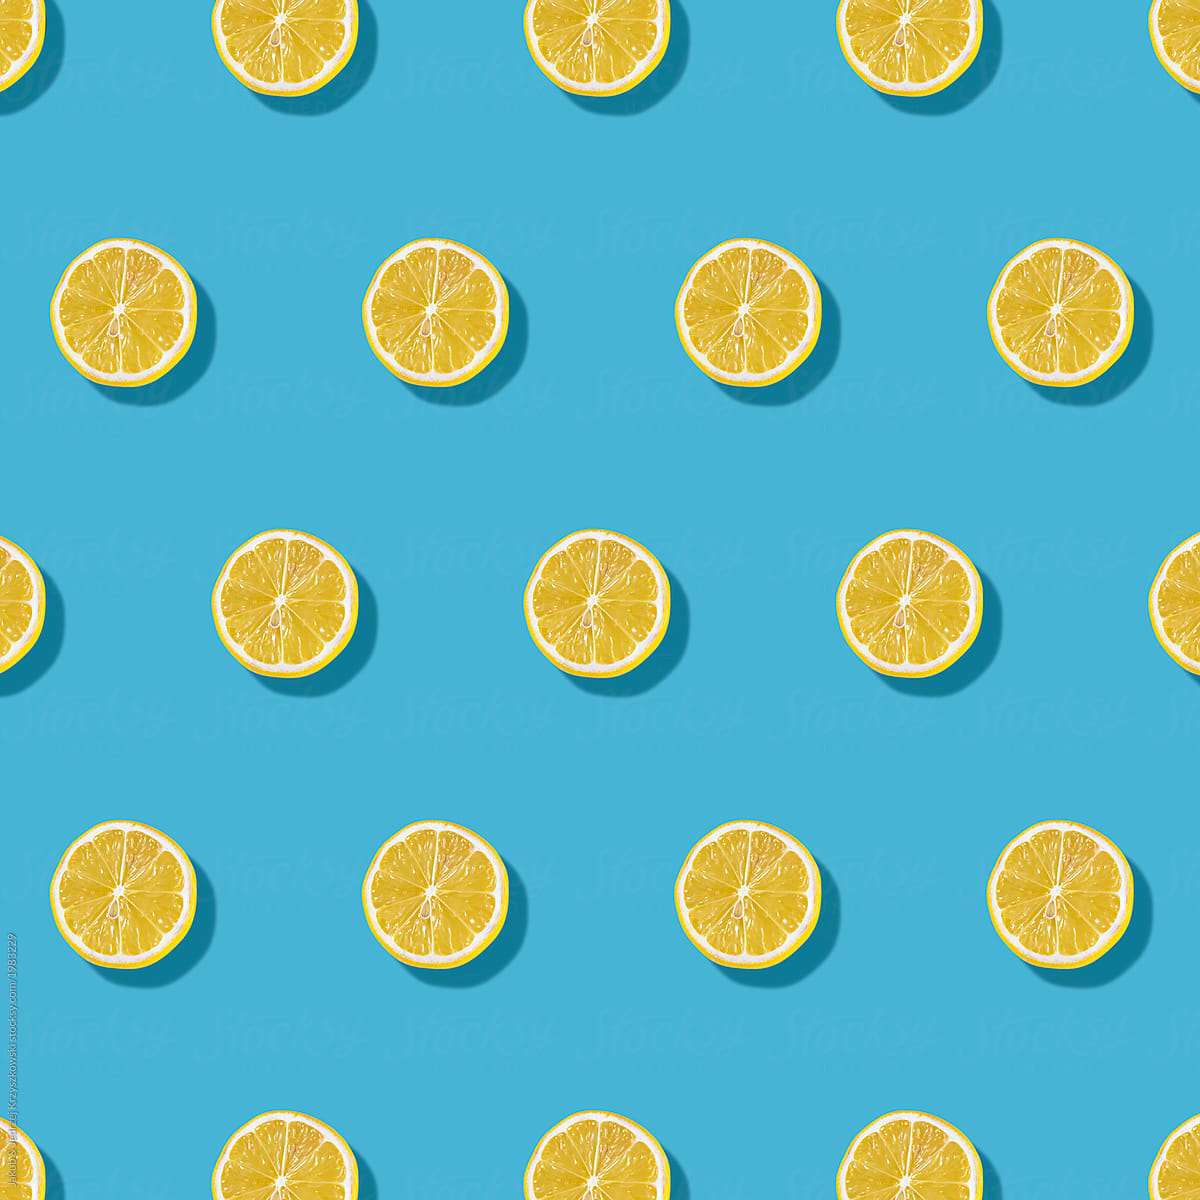 Lemon Pattern on Yellow Background